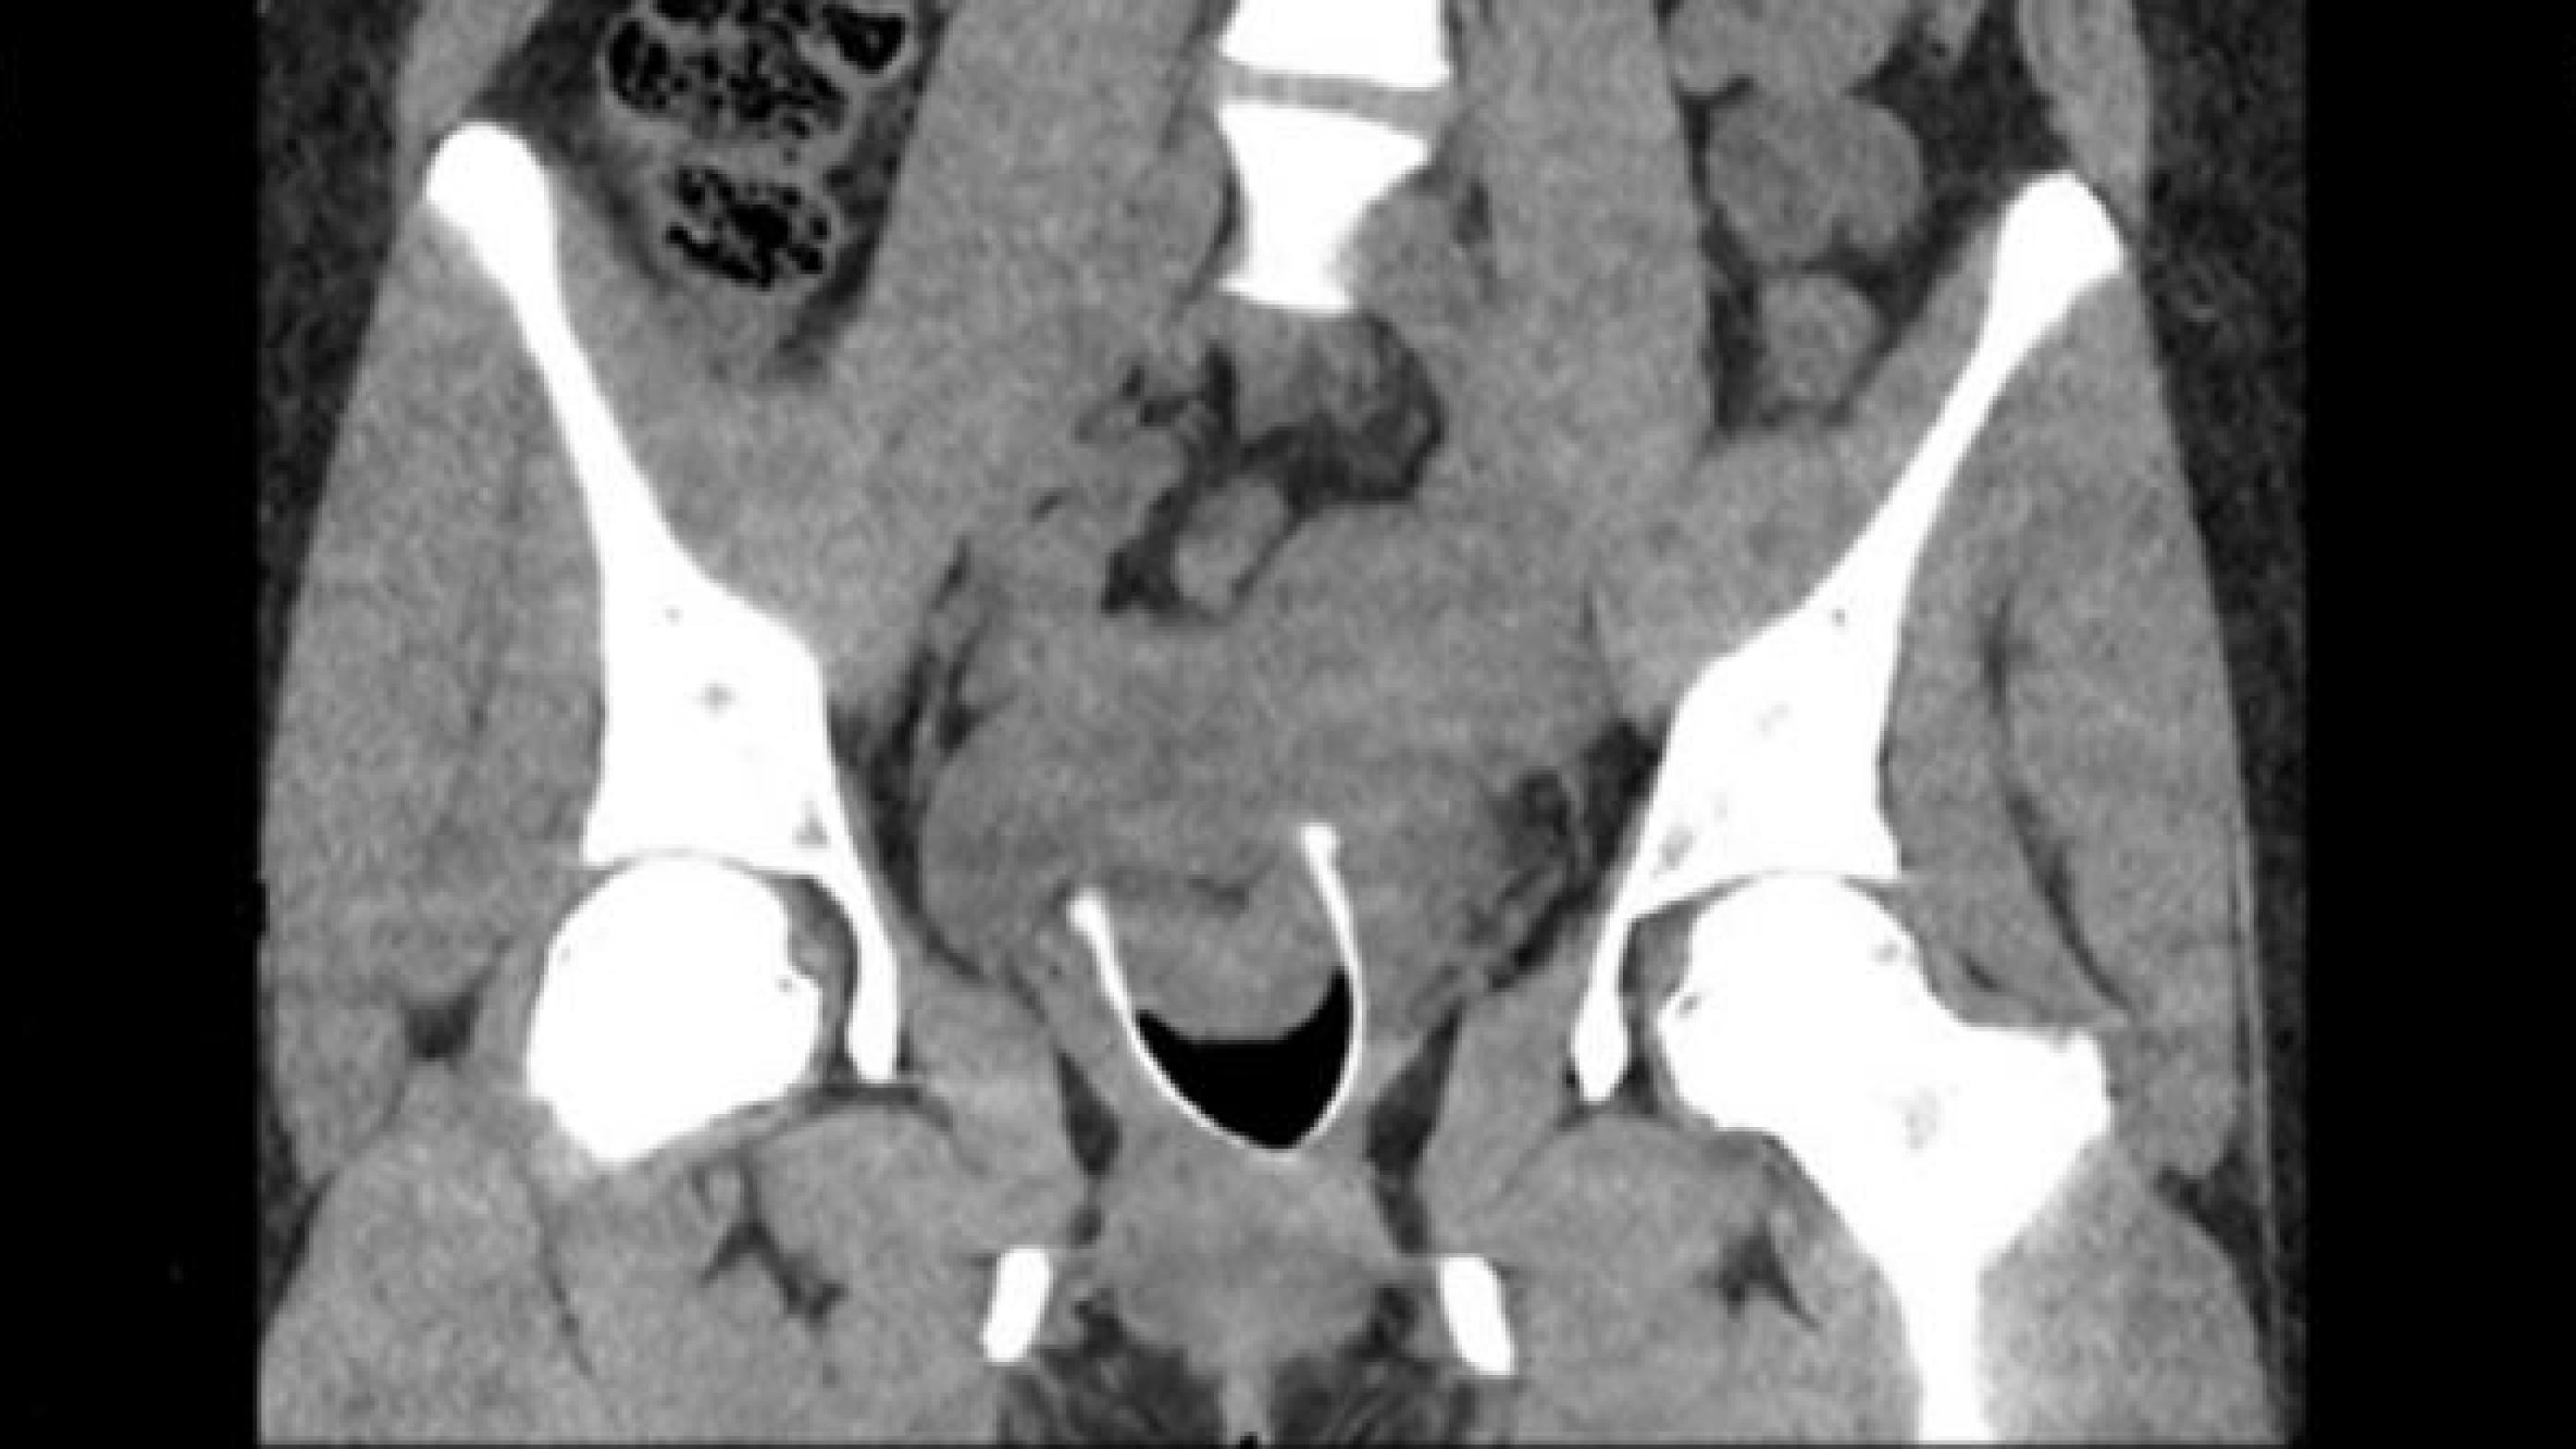 CT-urografi. Der ses højresidig hydronefrose samt en cystisk proces i milten. Endvidere ses et fremmedlegeme i vagina.